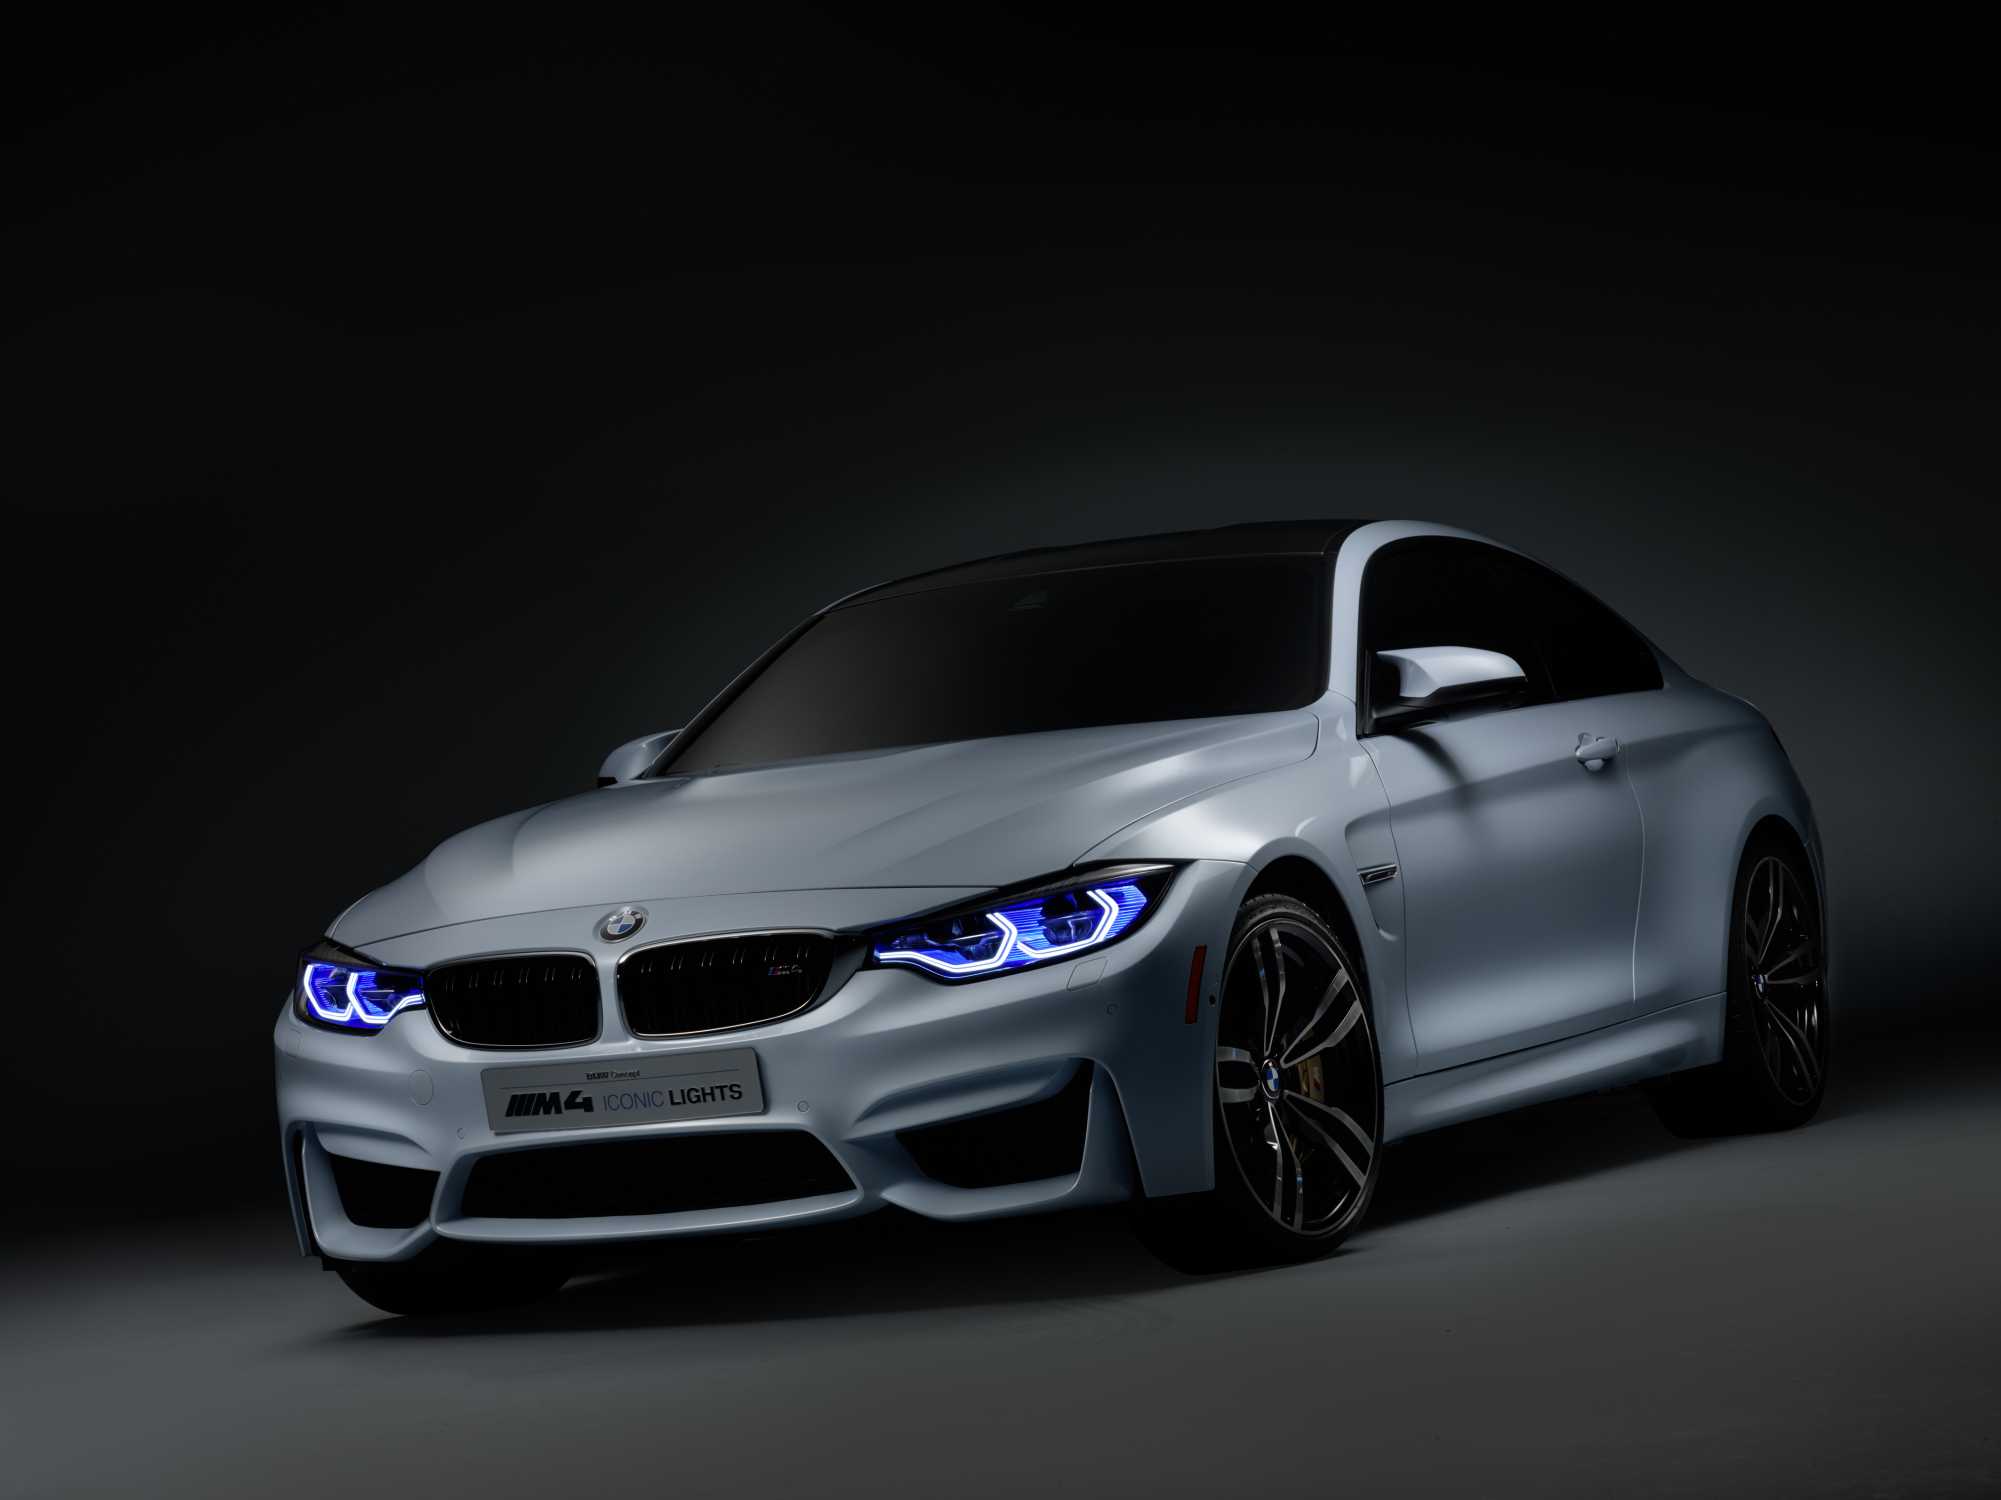 BMW M4 Concept Backgrounds, Compatible - PC, Mobile, Gadgets| 2001x1500 px